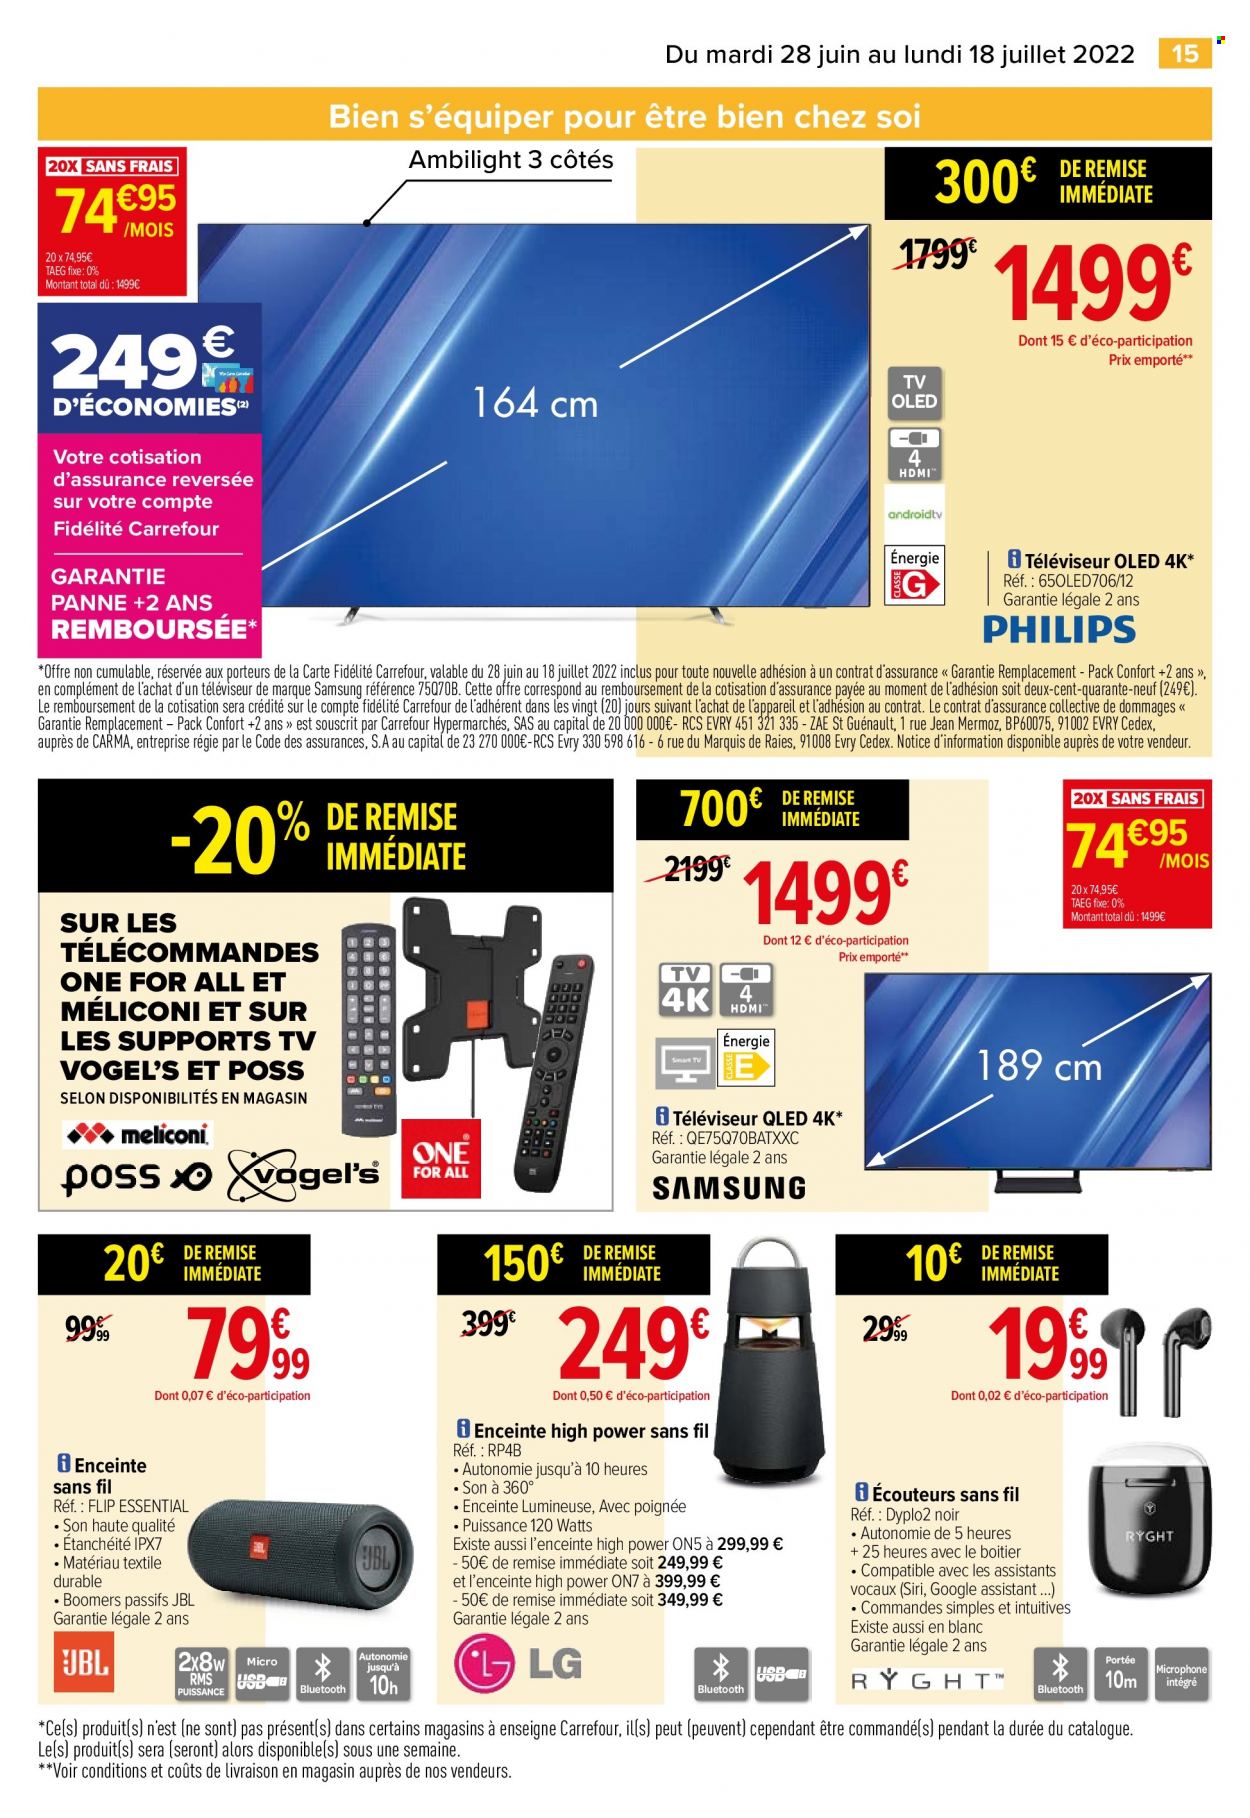 Catalogue Carrefour Hypermarchés - 28.06.2022 - 18.07.2022. 